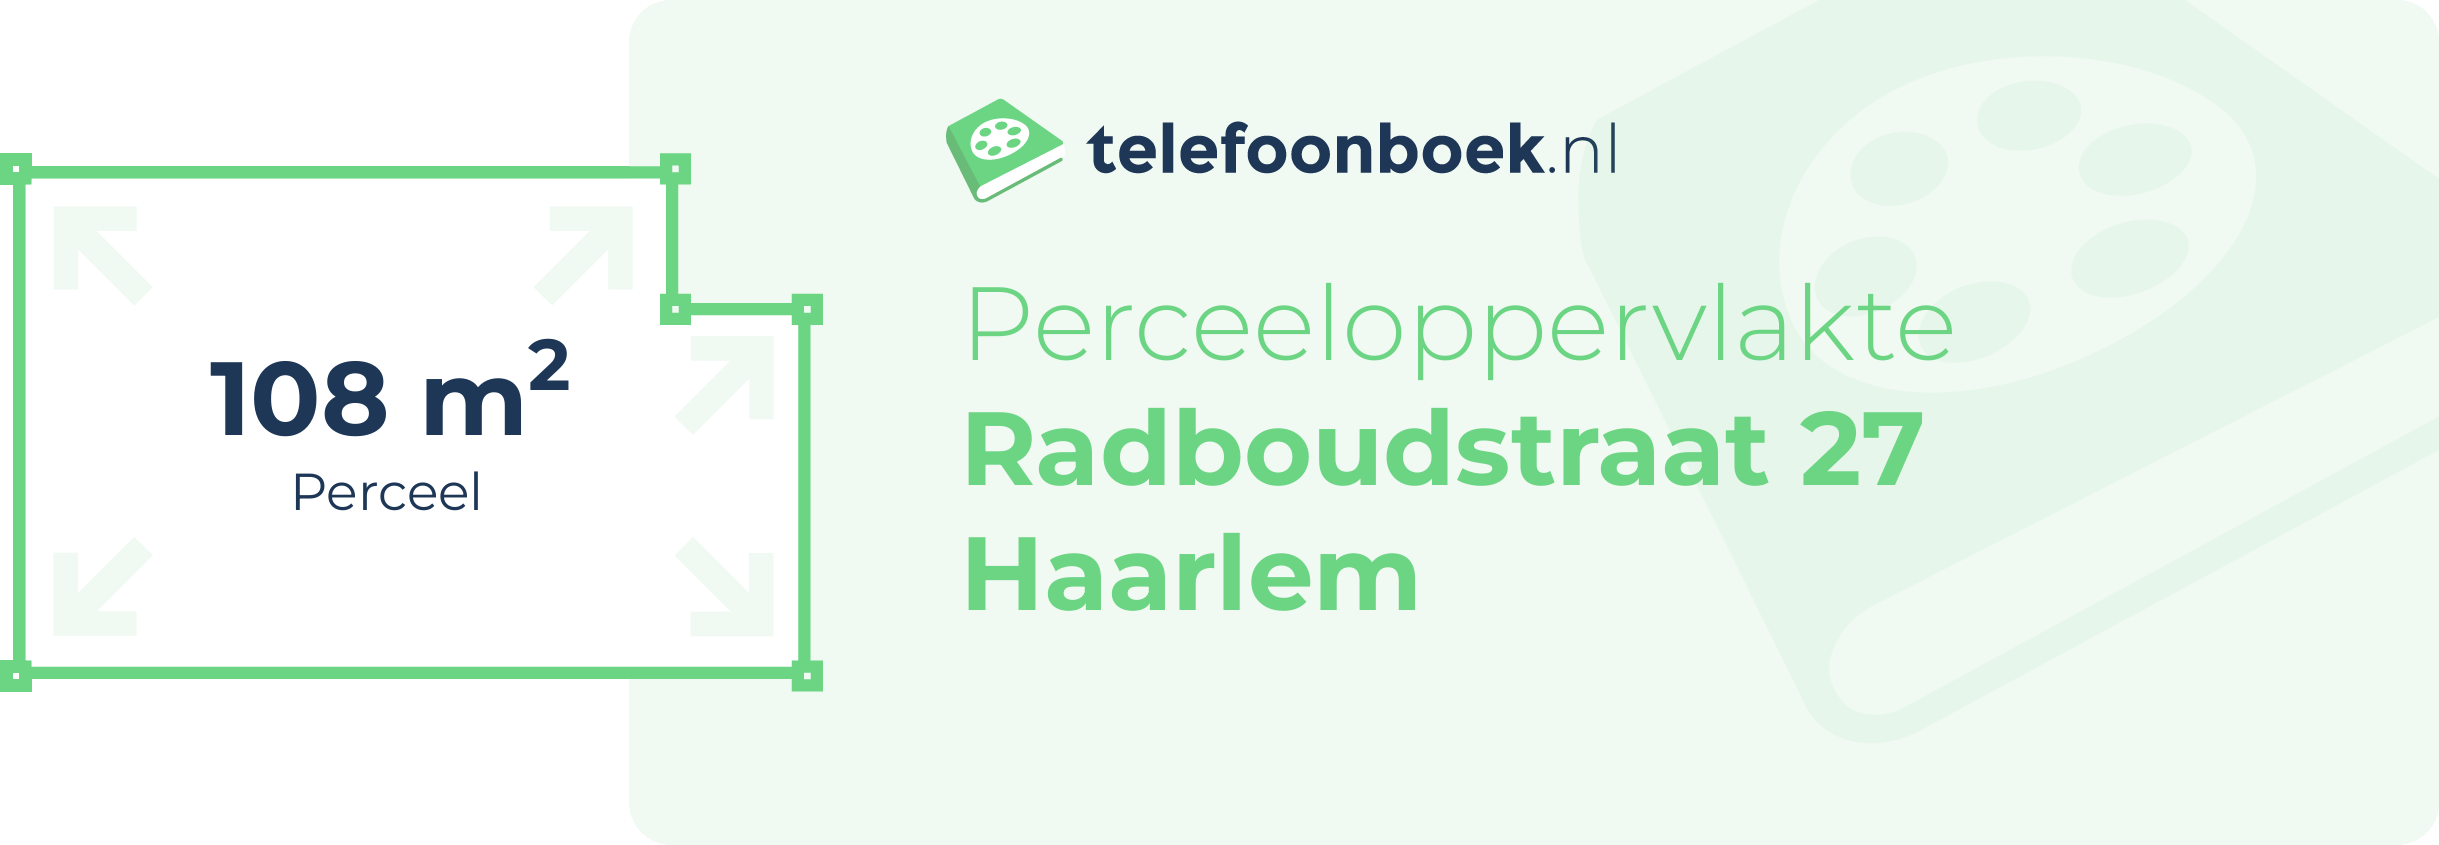 Perceeloppervlakte Radboudstraat 27 Haarlem